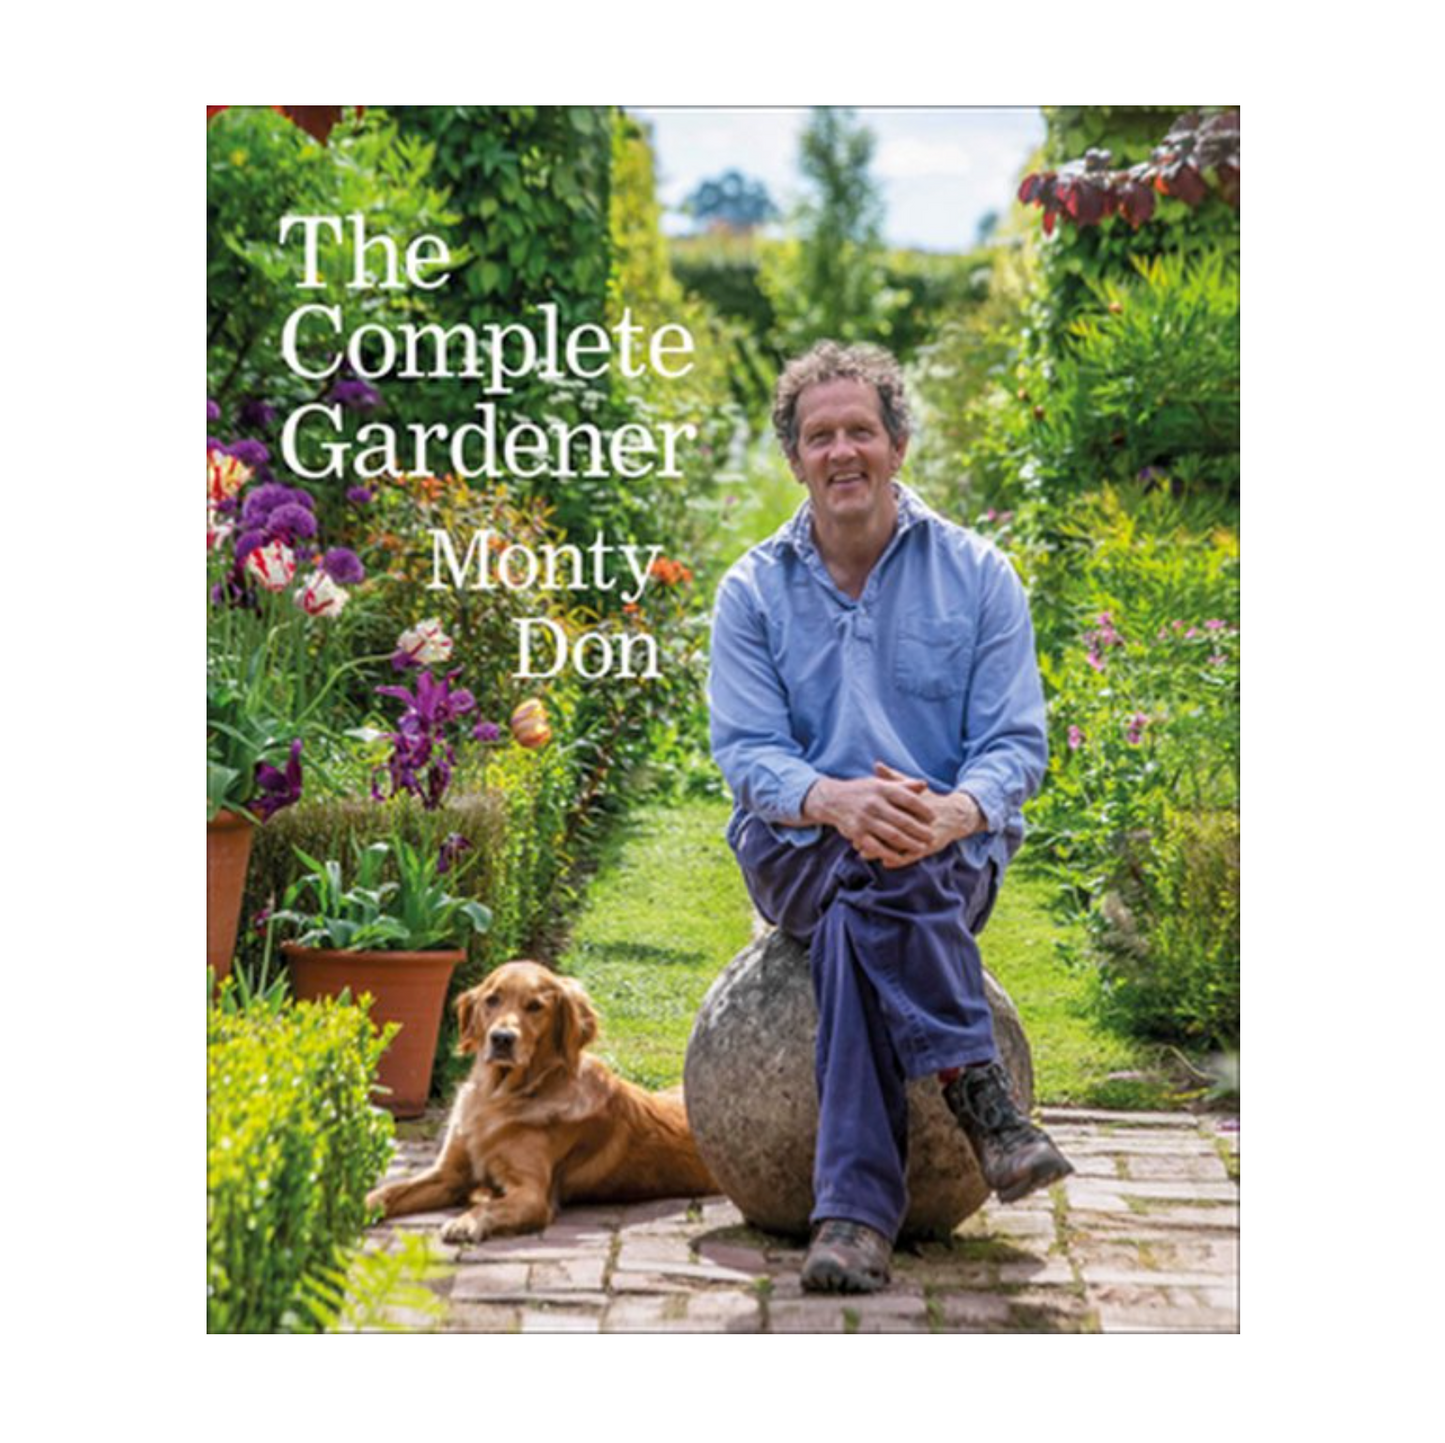 The Complete gardener